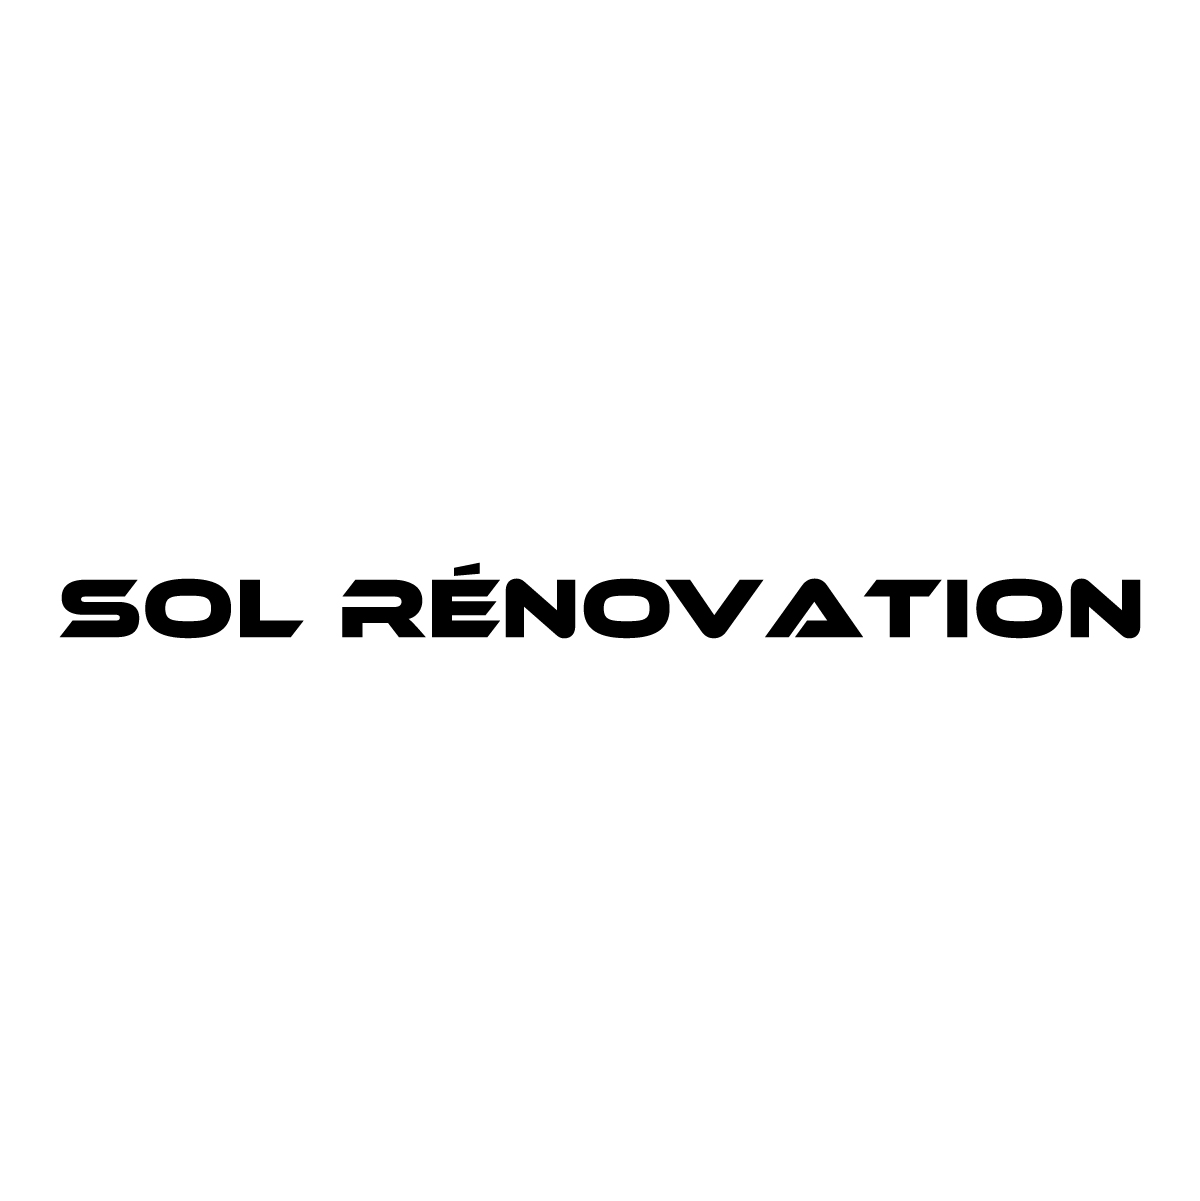 (c) Sol-renovation.com